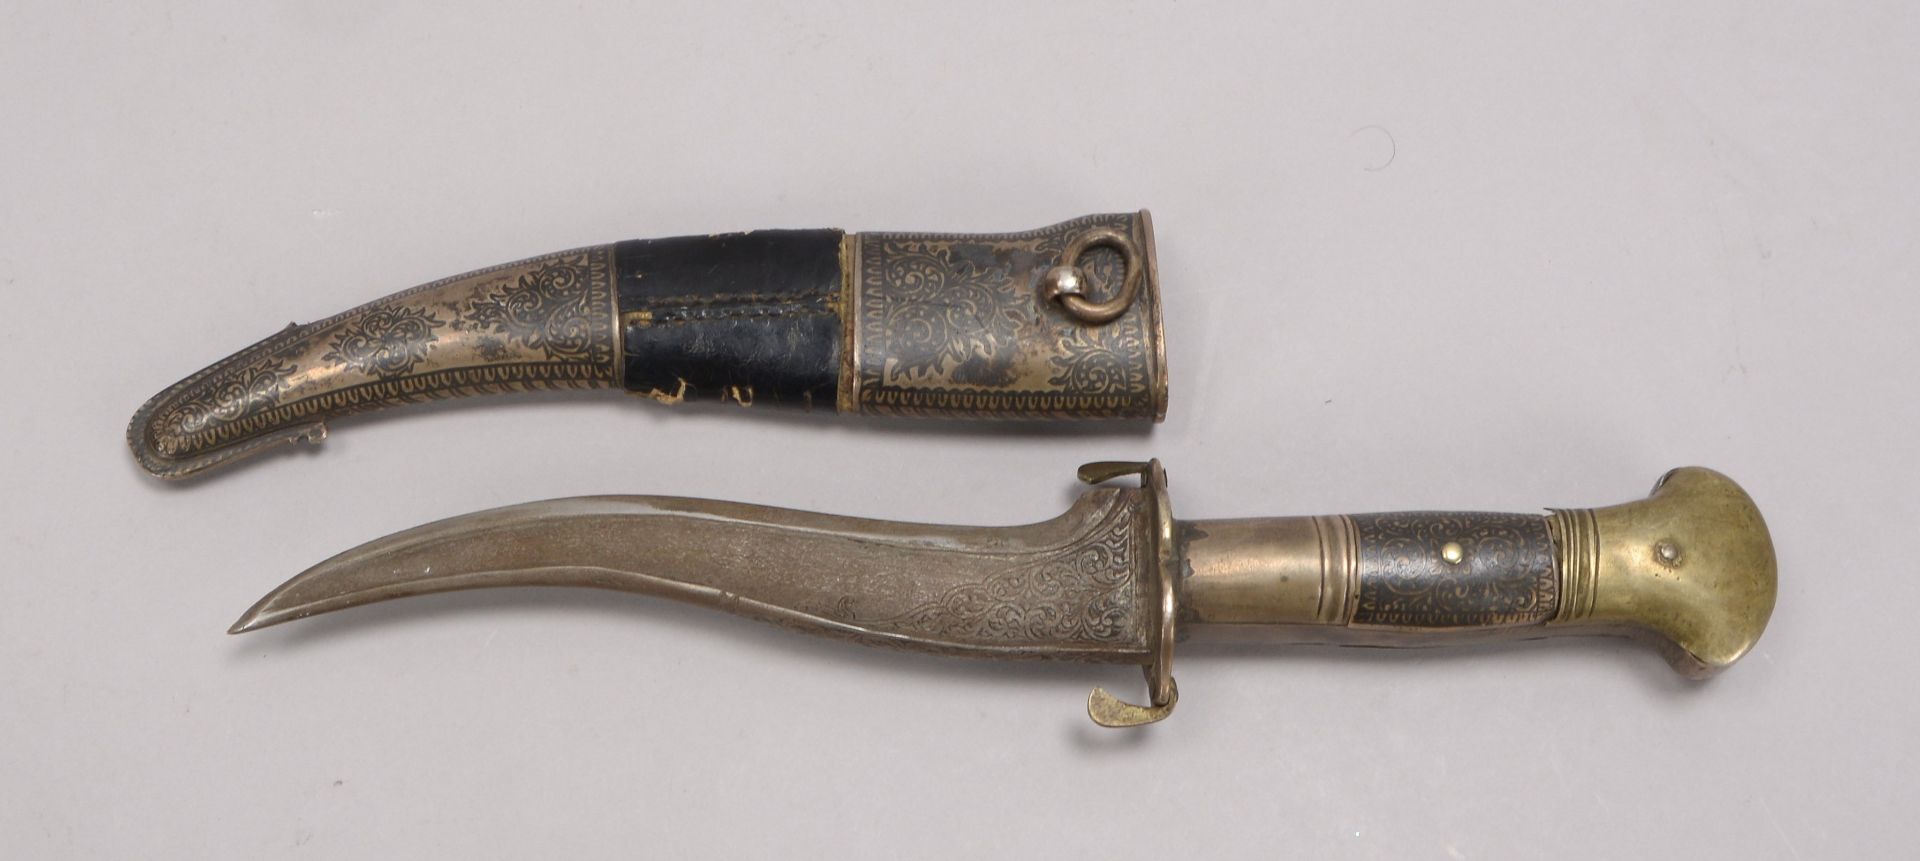 Krummdolch (Jemen -?), Scheide mit Silberauflage und Nielloarbeit; Länge Klinge 15,7 cm, Gesamtlänge